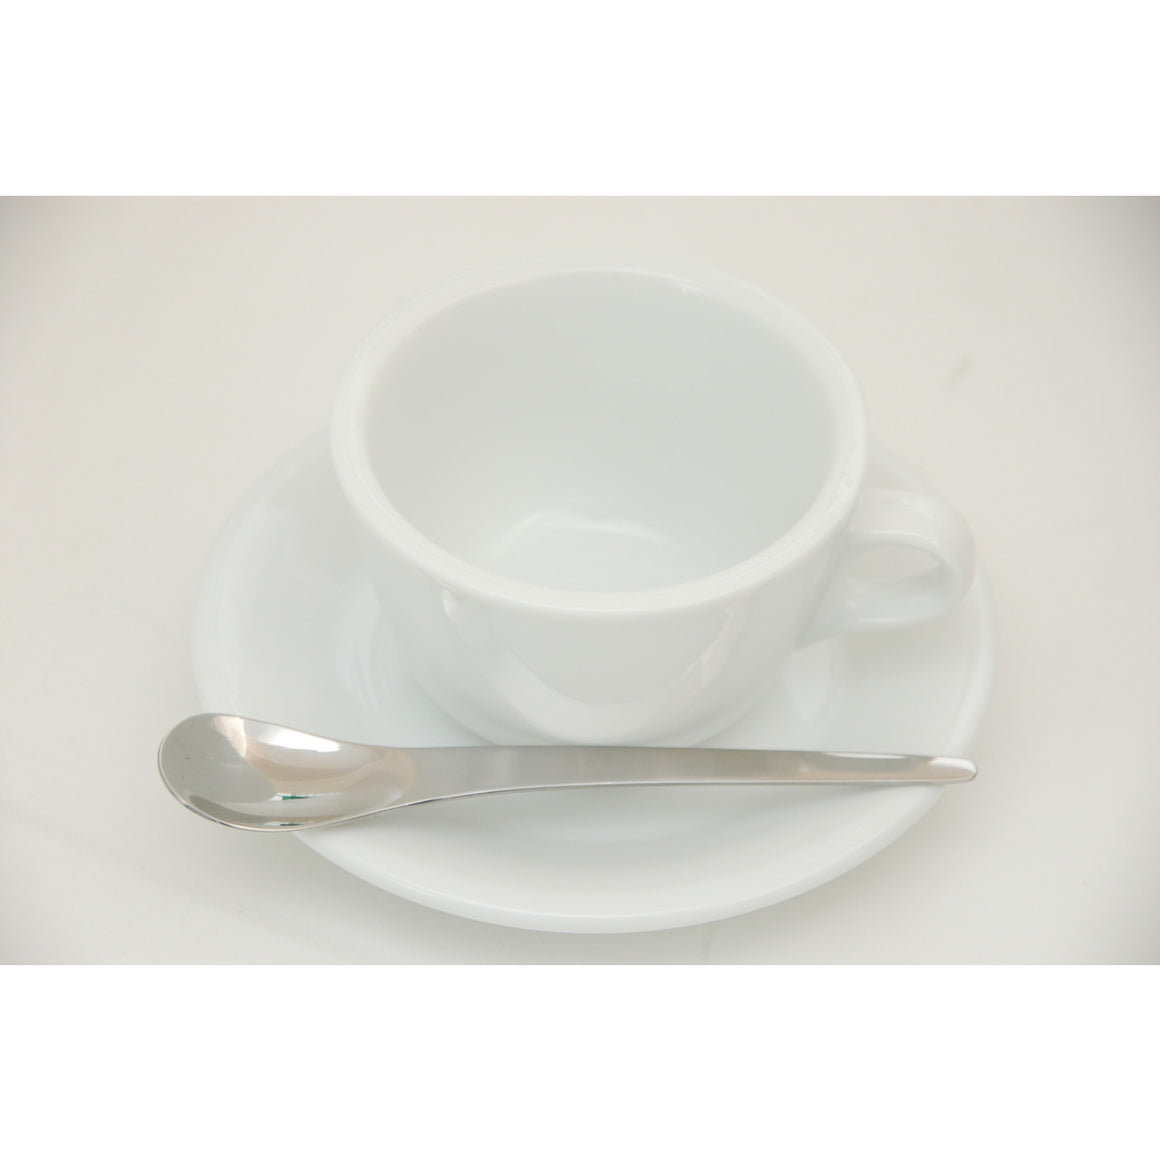 Cappuccino Spoons - Set of 6 by Joe Frex - My Espresso Shop